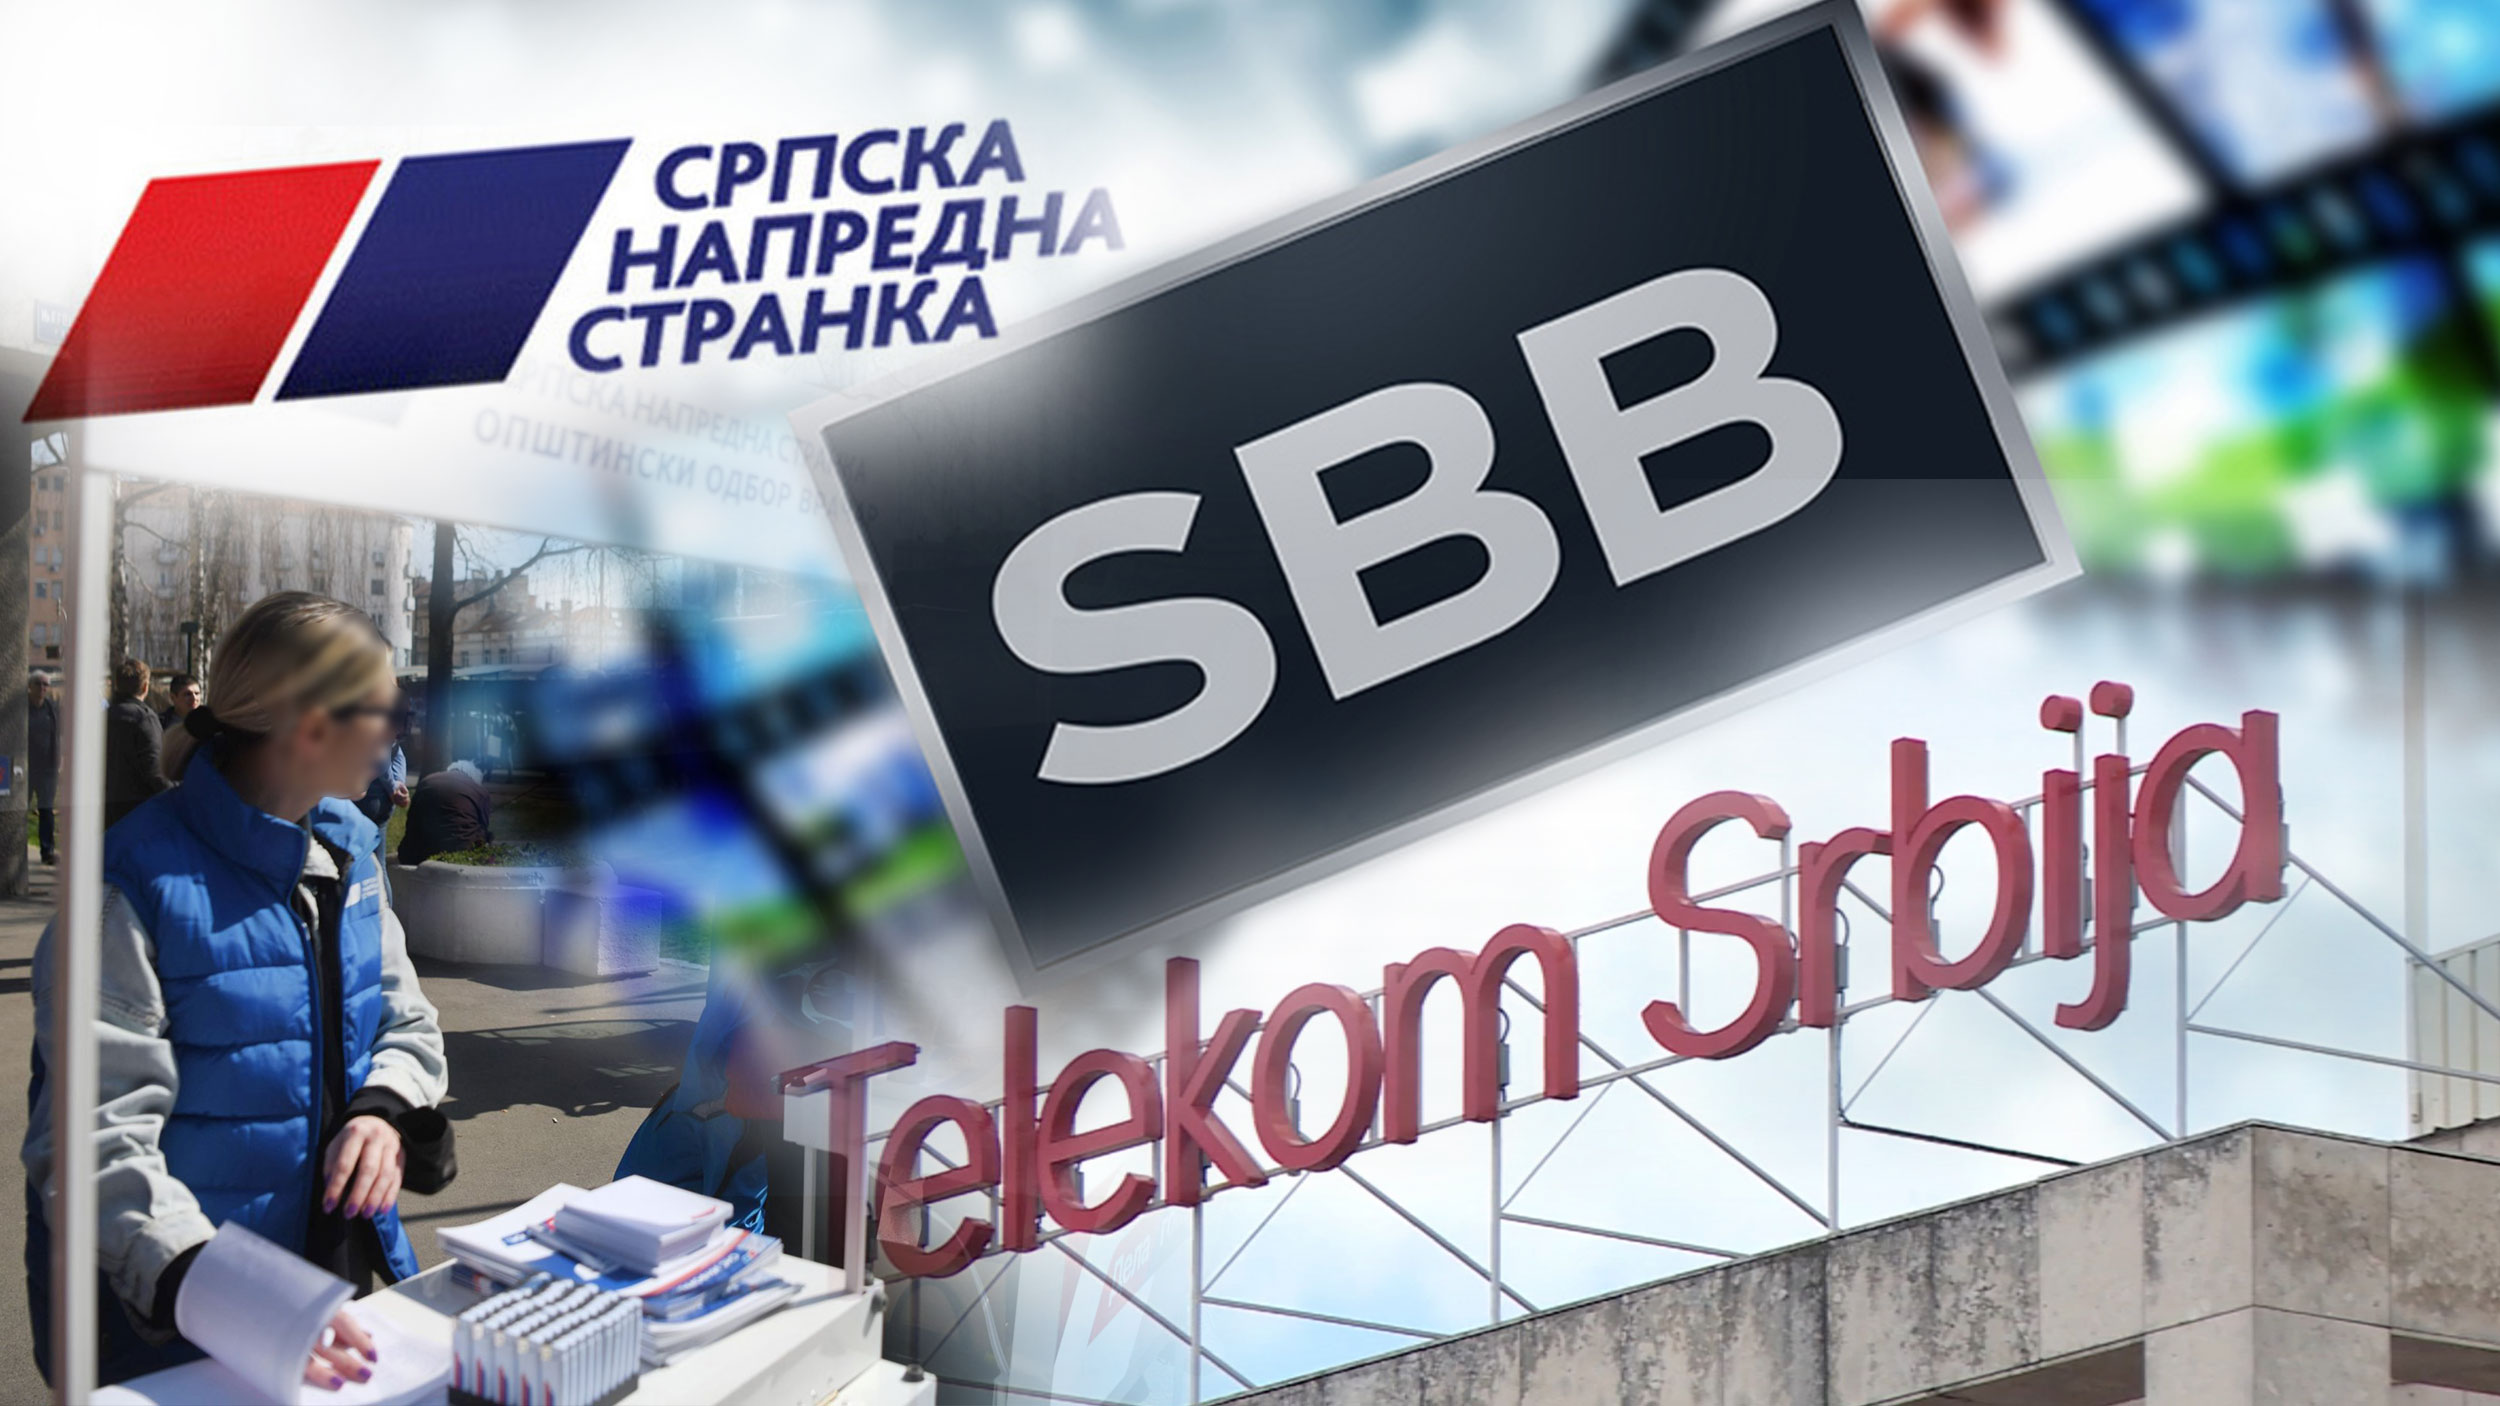 Građani, oprez! Aktivisti SNS idu od vrata do vrata i predlažu raskid ugovora sa SBB i prelazak na Telekom